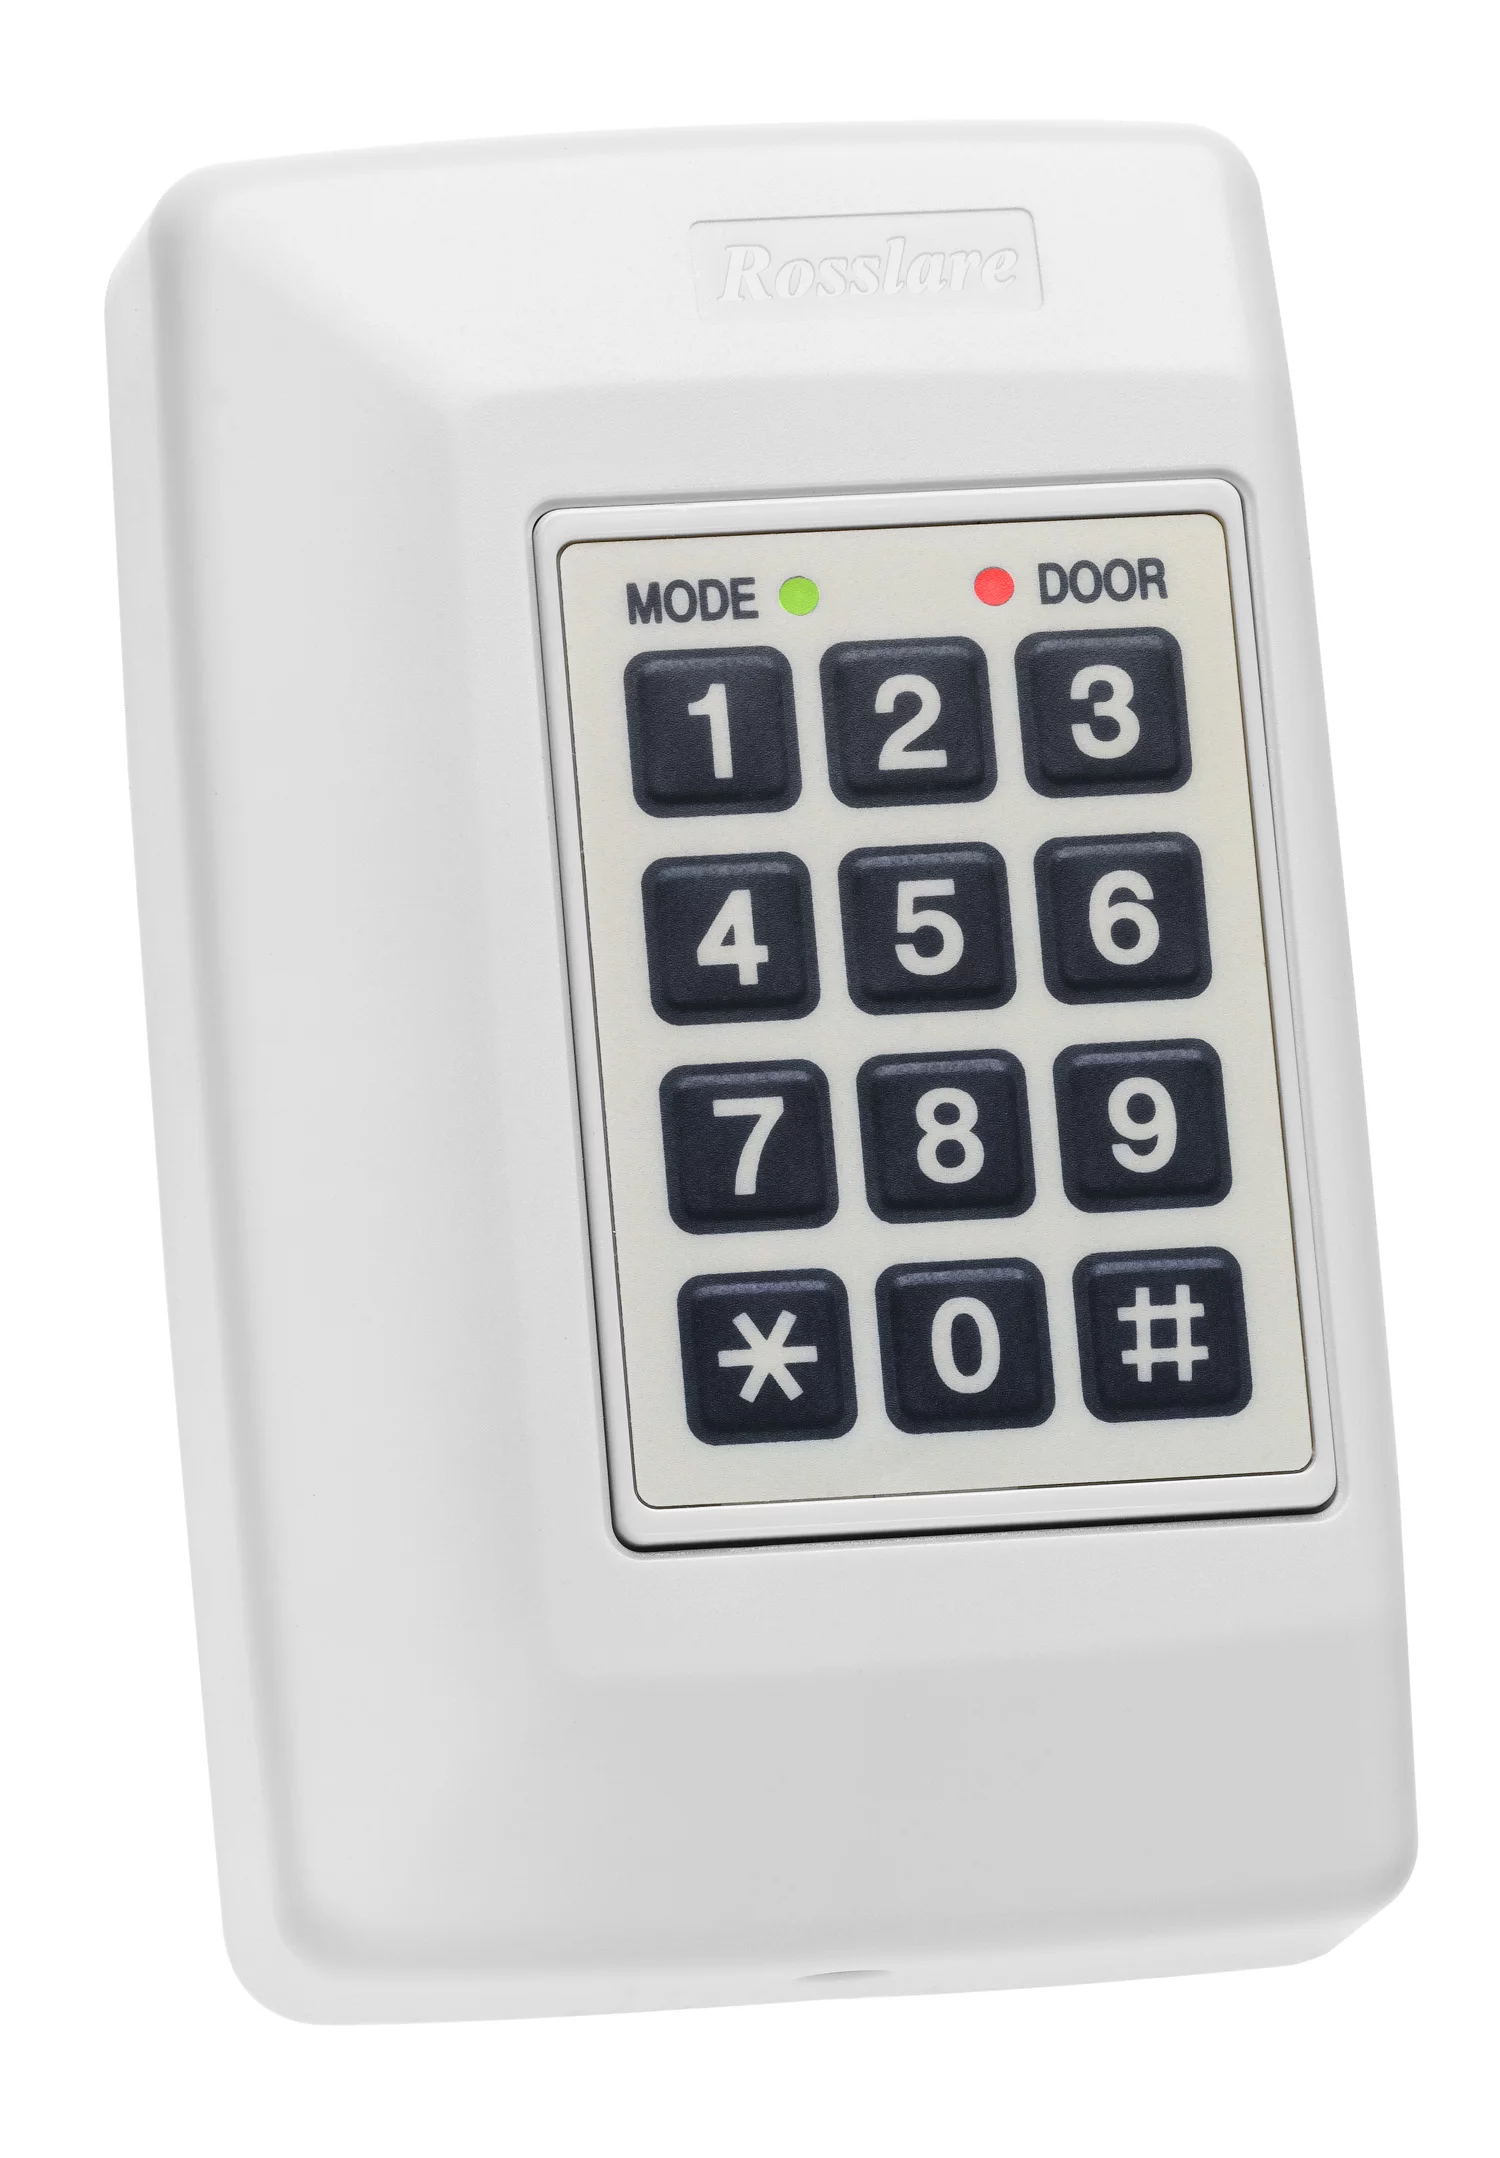 Rosslare 1 Door Network Controller with Software AC-115